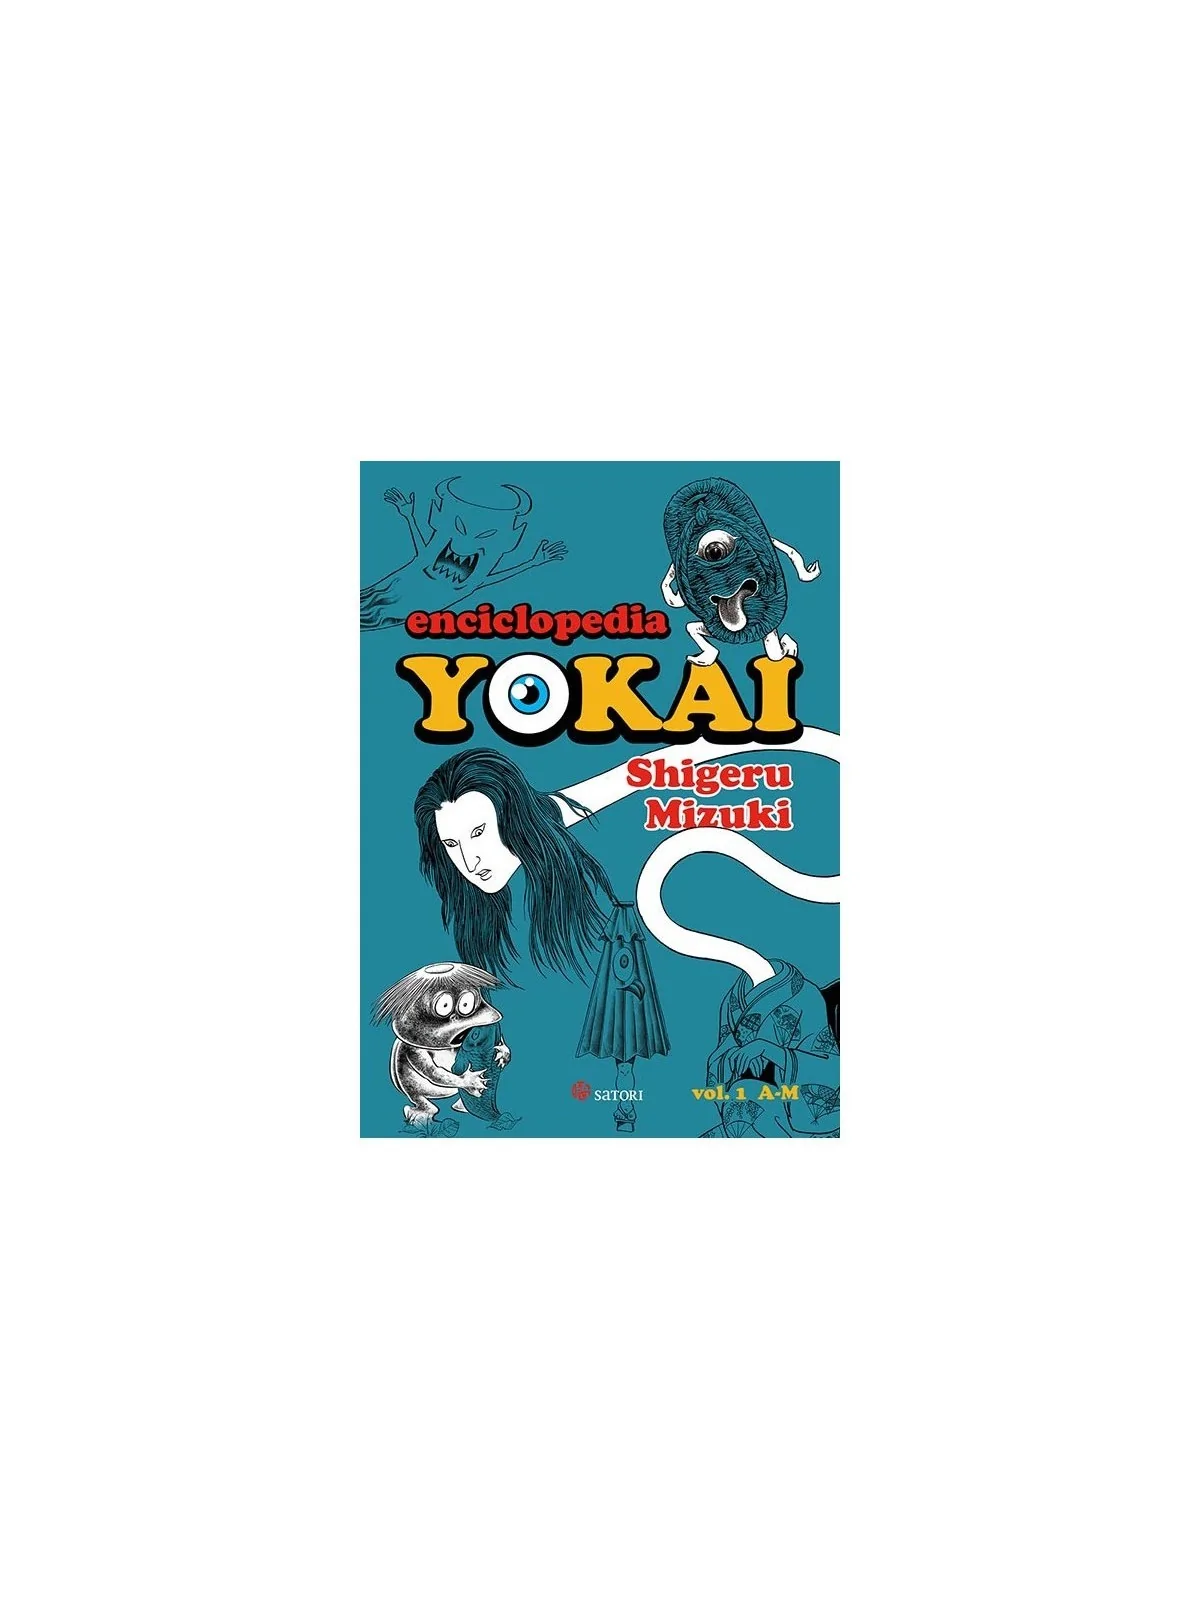 Comprar Enciclopedia Yokai 01 barato al mejor precio 23,75 € de Satori